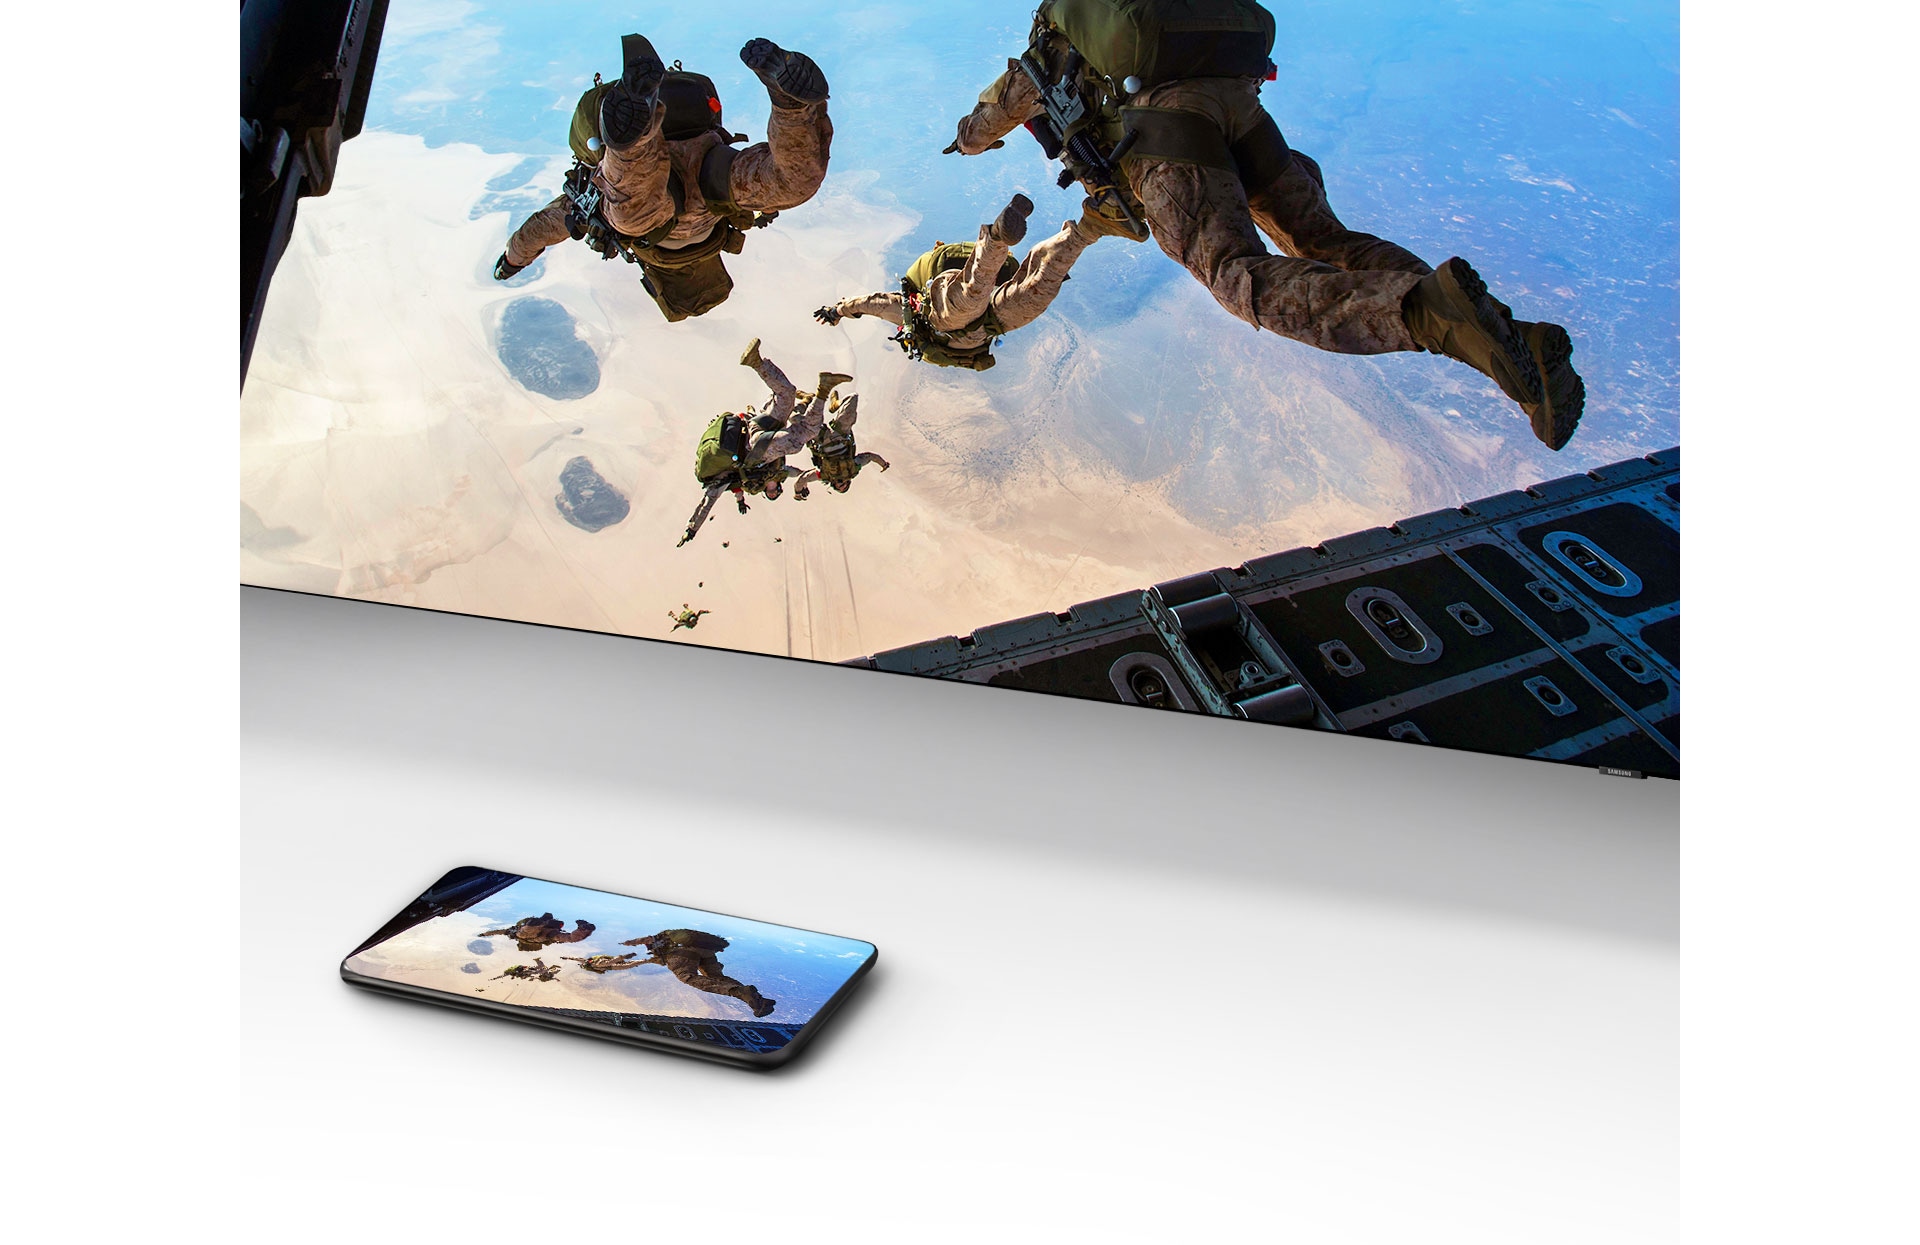 Видео, изображающее людей, прыгающих с парашютом, воспроизводится на смартфоне перед телевизором Samsung Smart TV, на экране которого дублируется тот же контент.